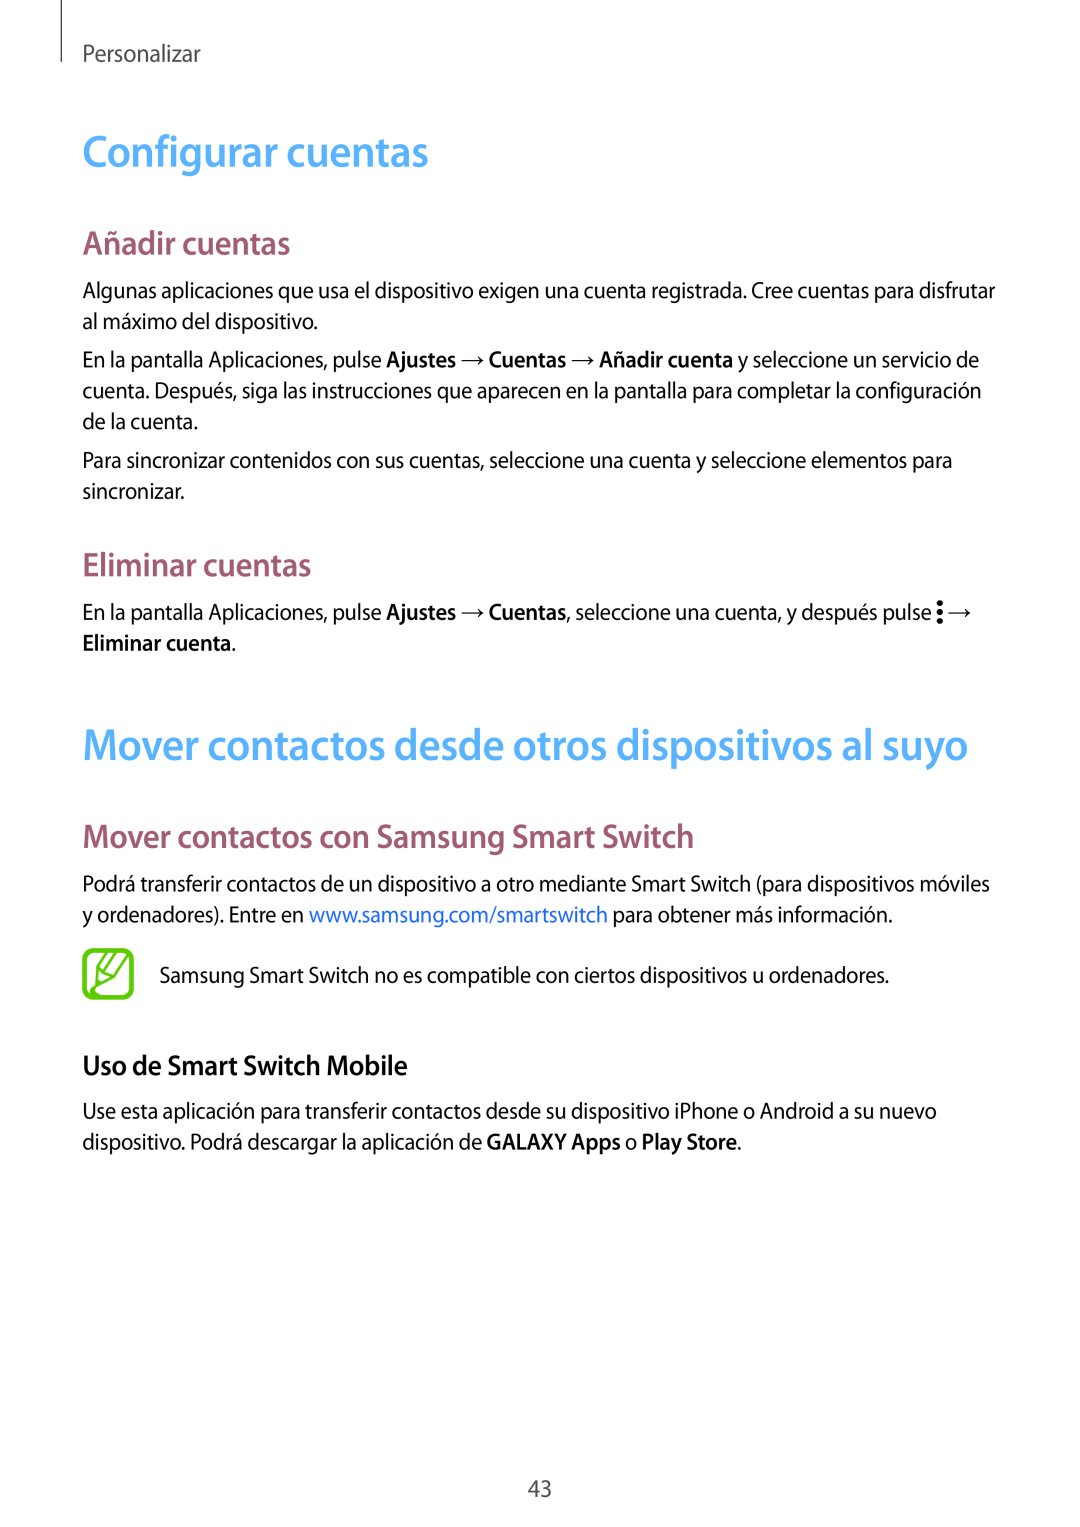 Samsung SM-G901FZKADBT Configurar cuentas, Mover contactos desde otros dispositivos al suyo, Añadir cuentas, Personalizar 